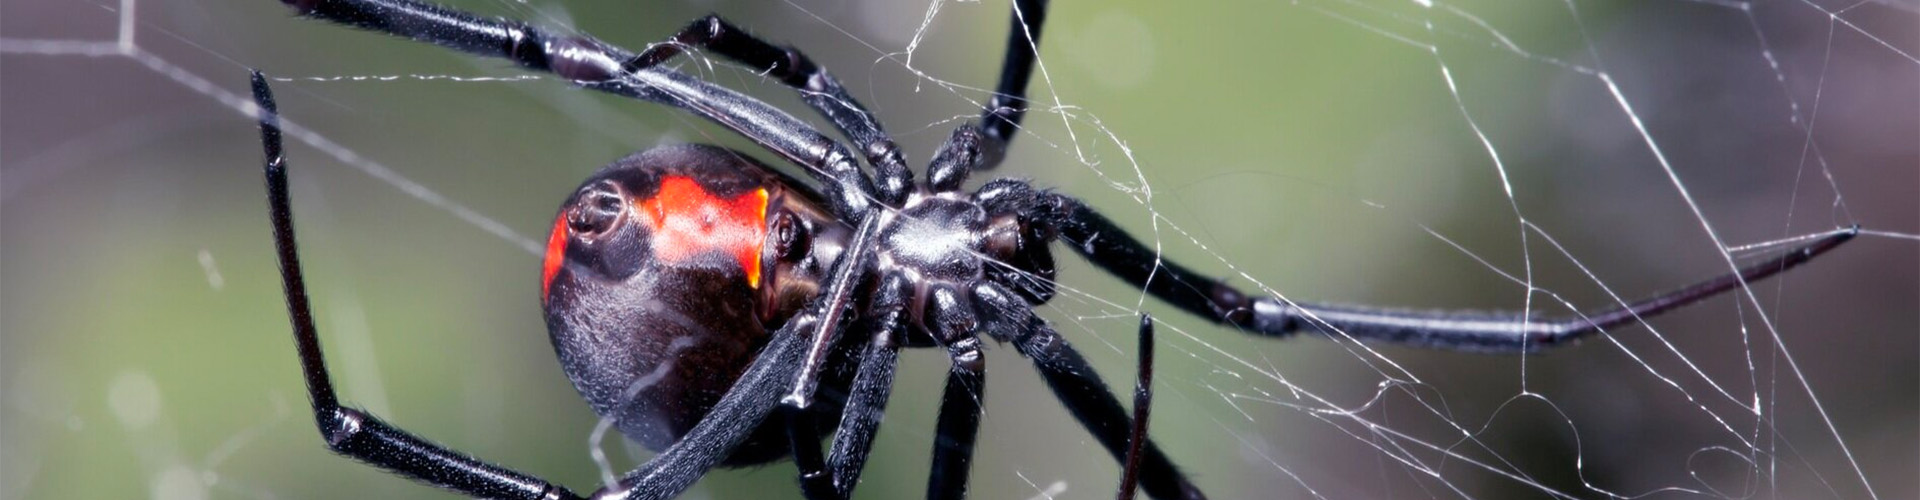 spider exterminator